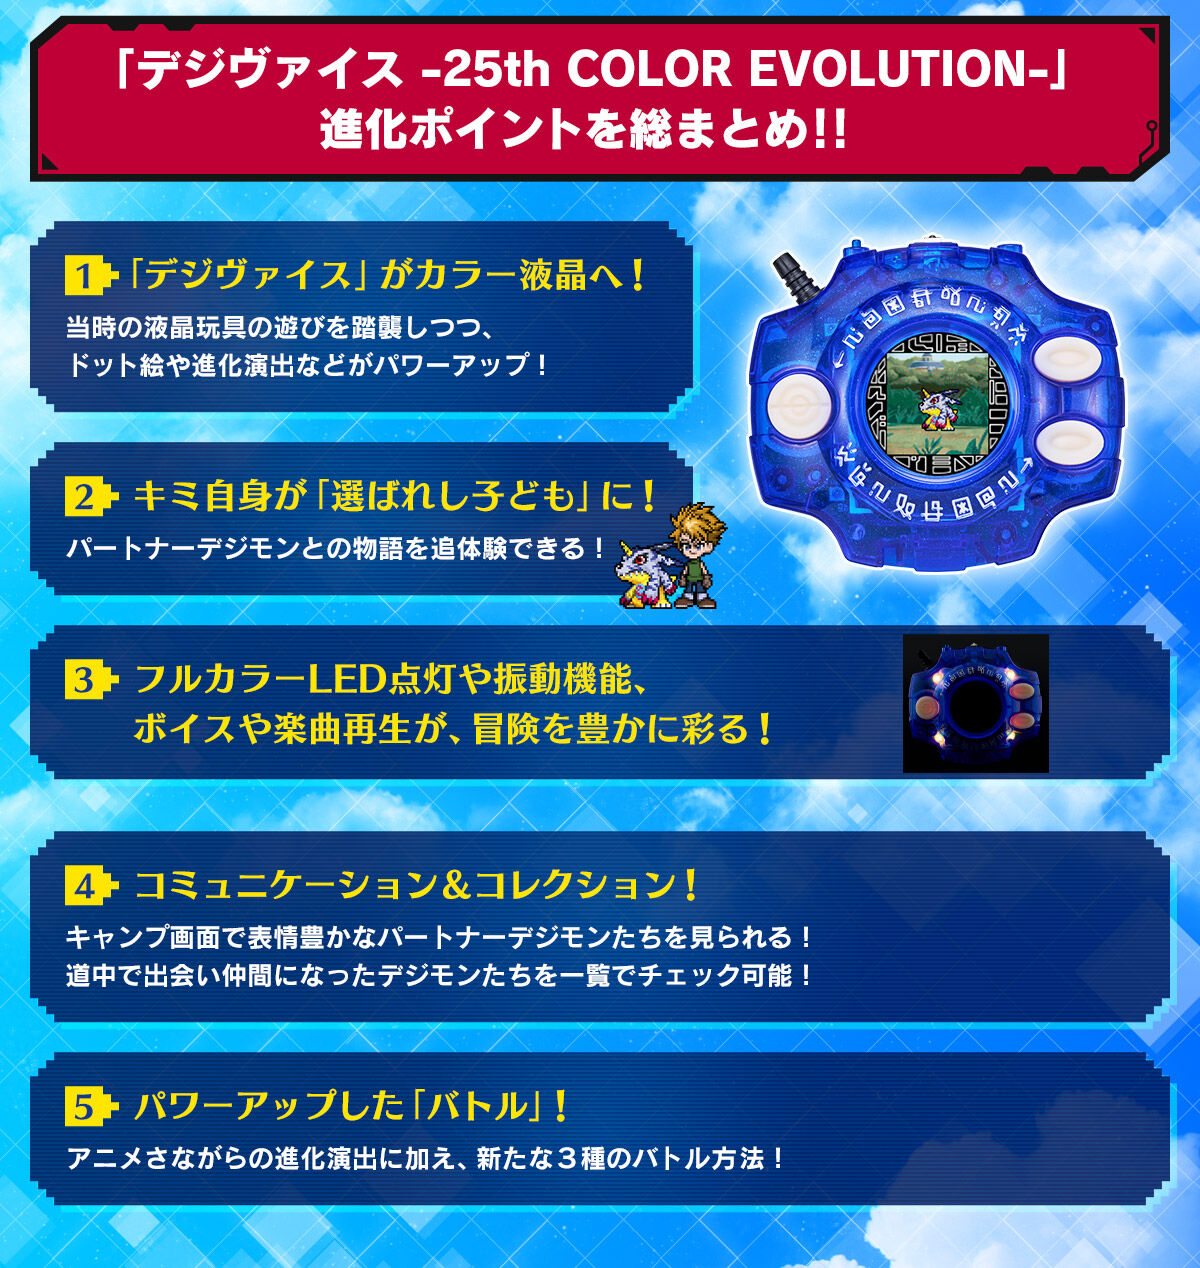 「デジヴァイス -25th COLOR EVOLUTION-」進化ポイントを総まとめ!!